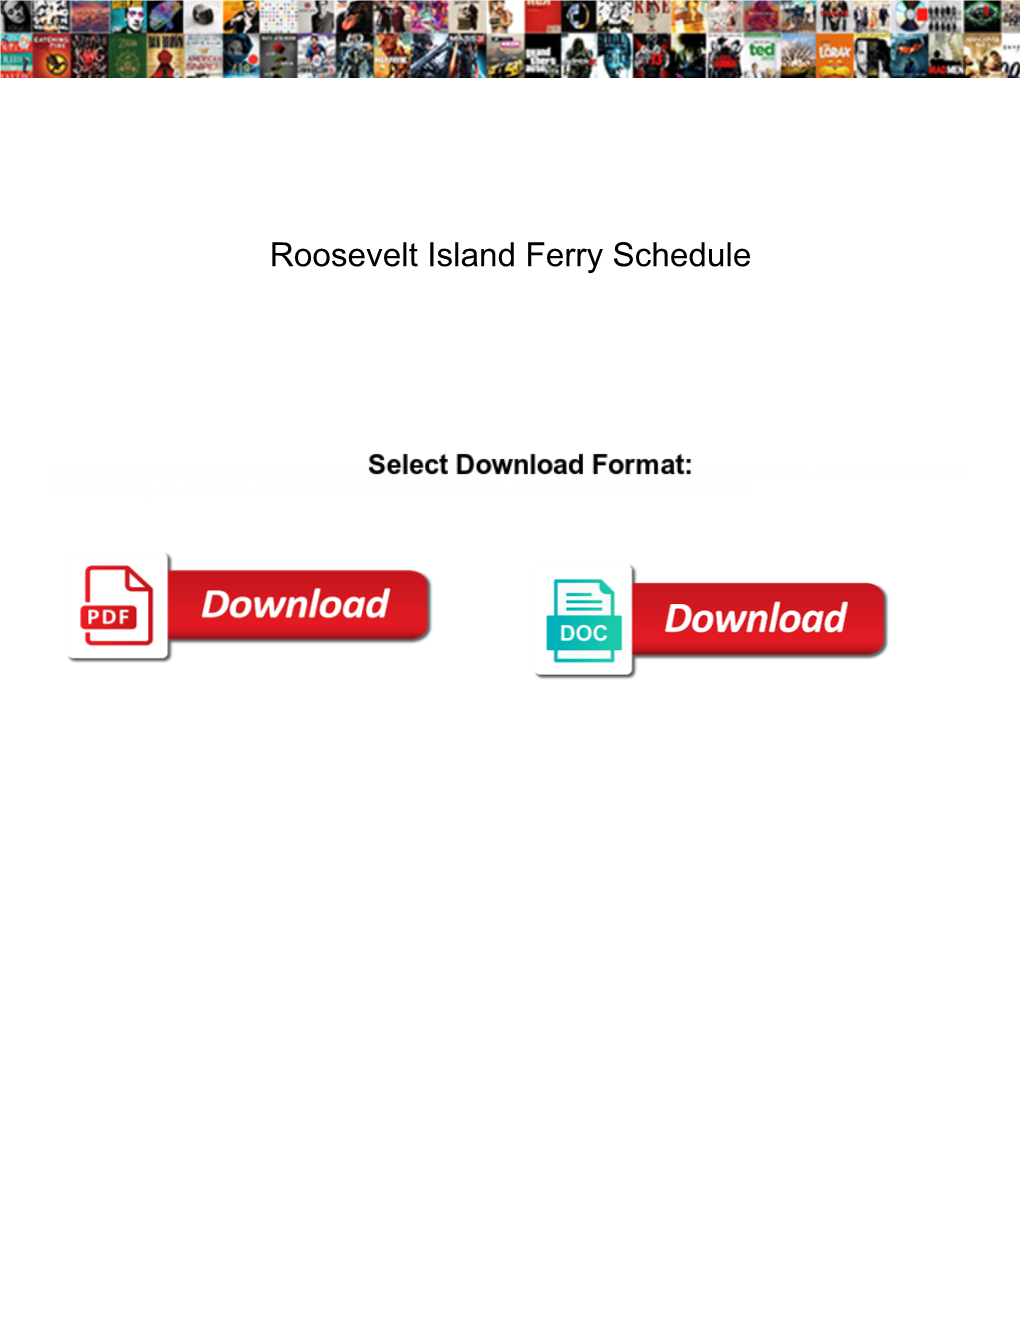 Roosevelt Island Ferry Schedule